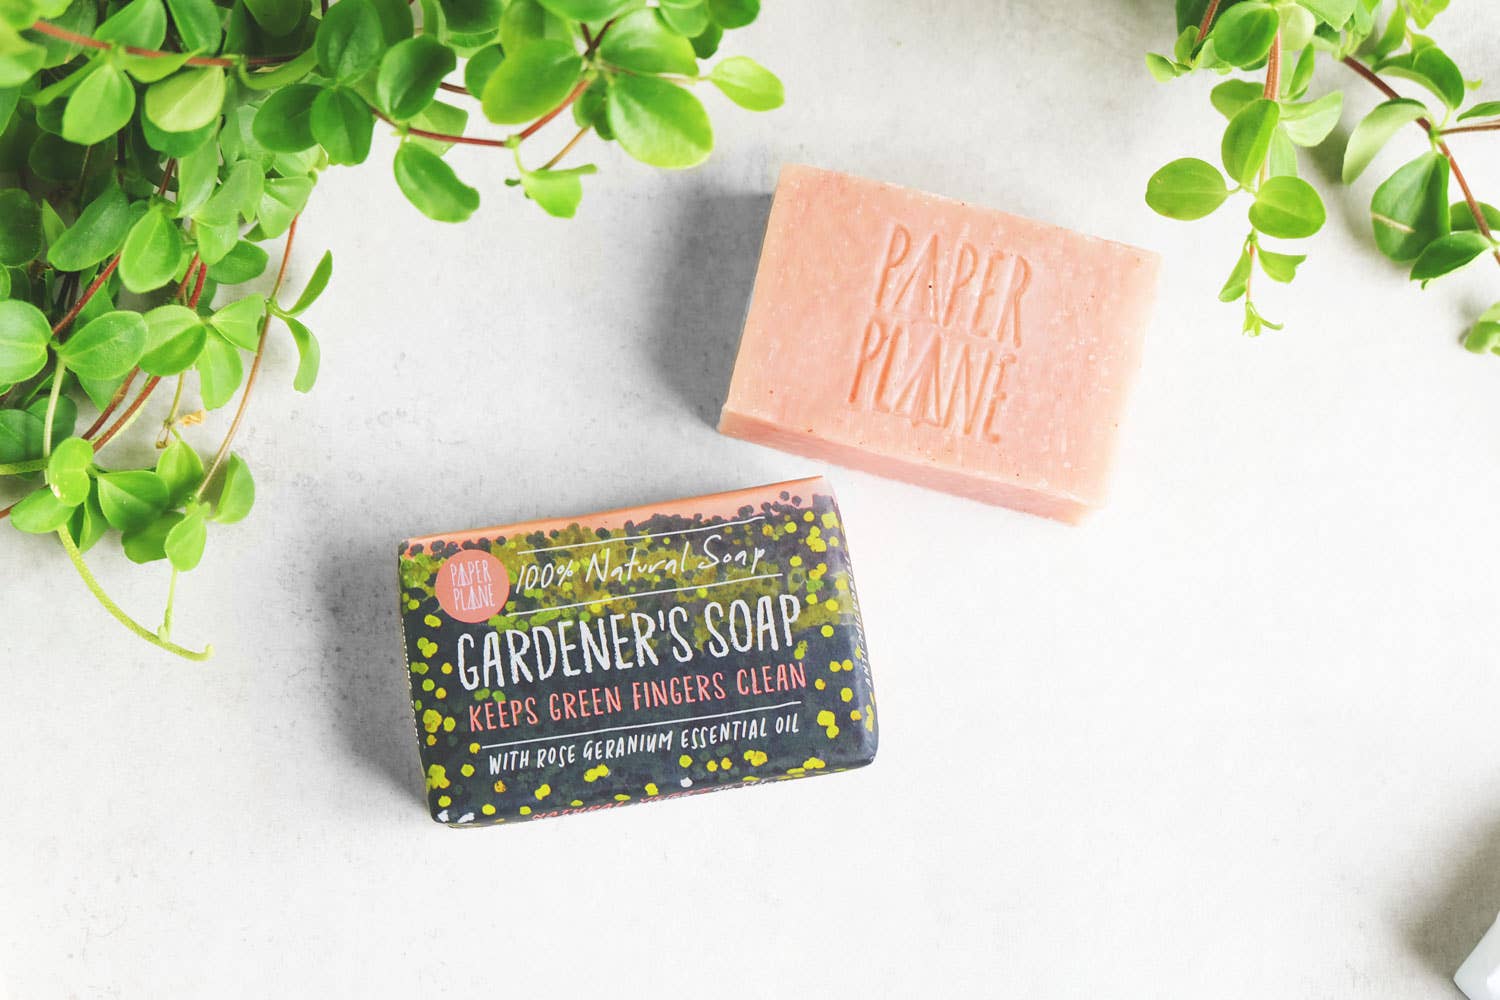 Paper Plane Gardener's soap with Rose Geranium